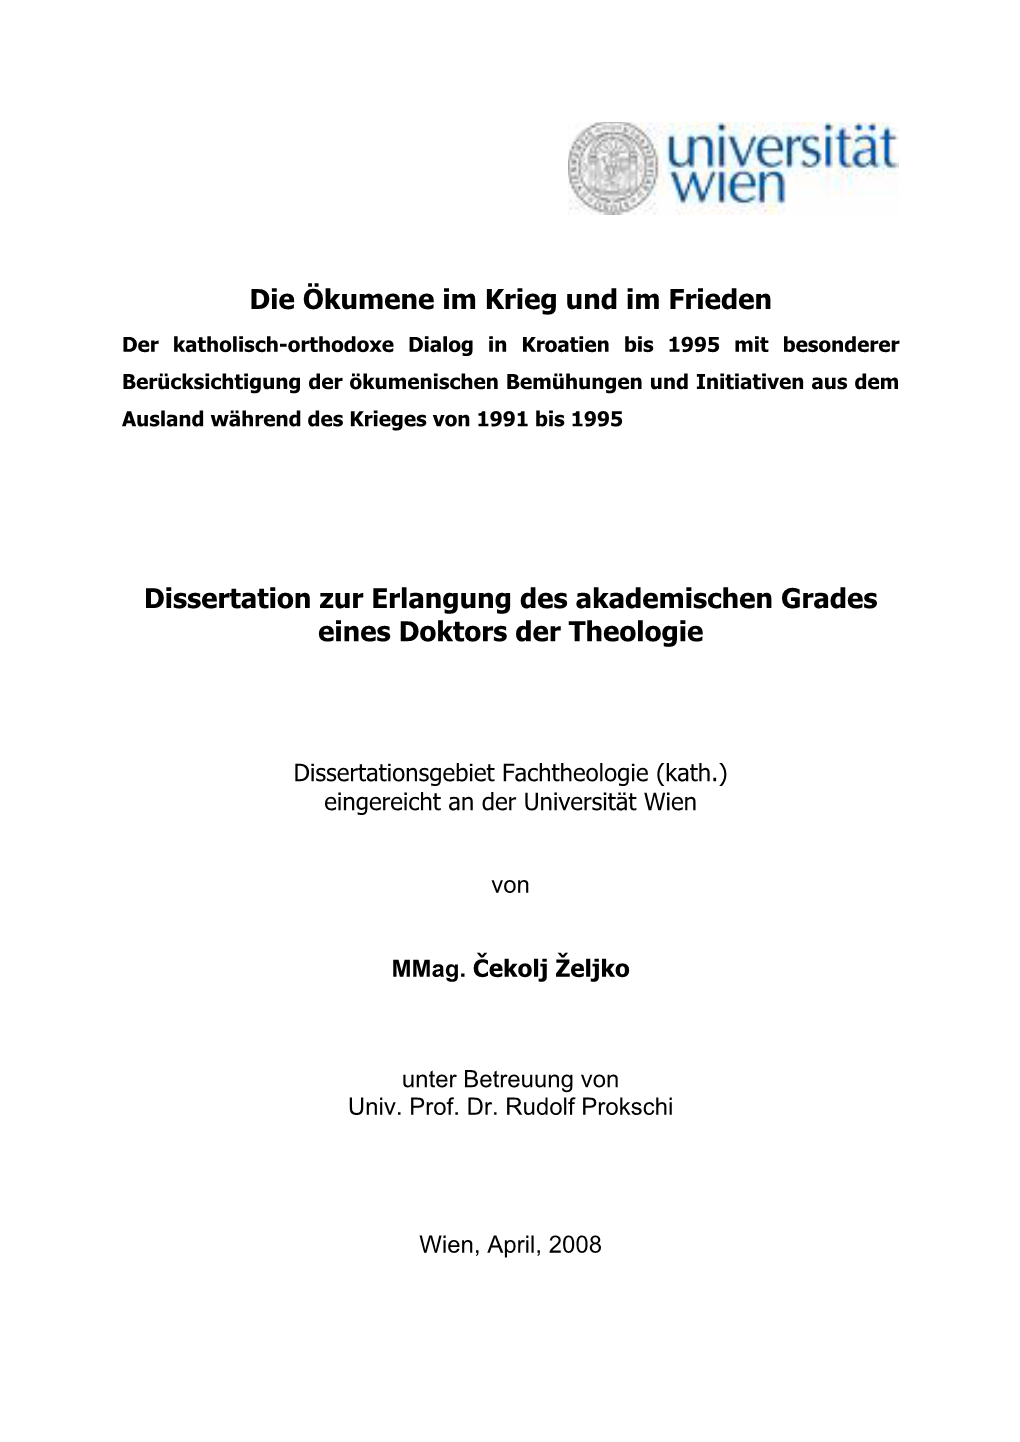 Die Ökumene Im Krieg Und Im Frieden Dissertation Zur Erlangung Des